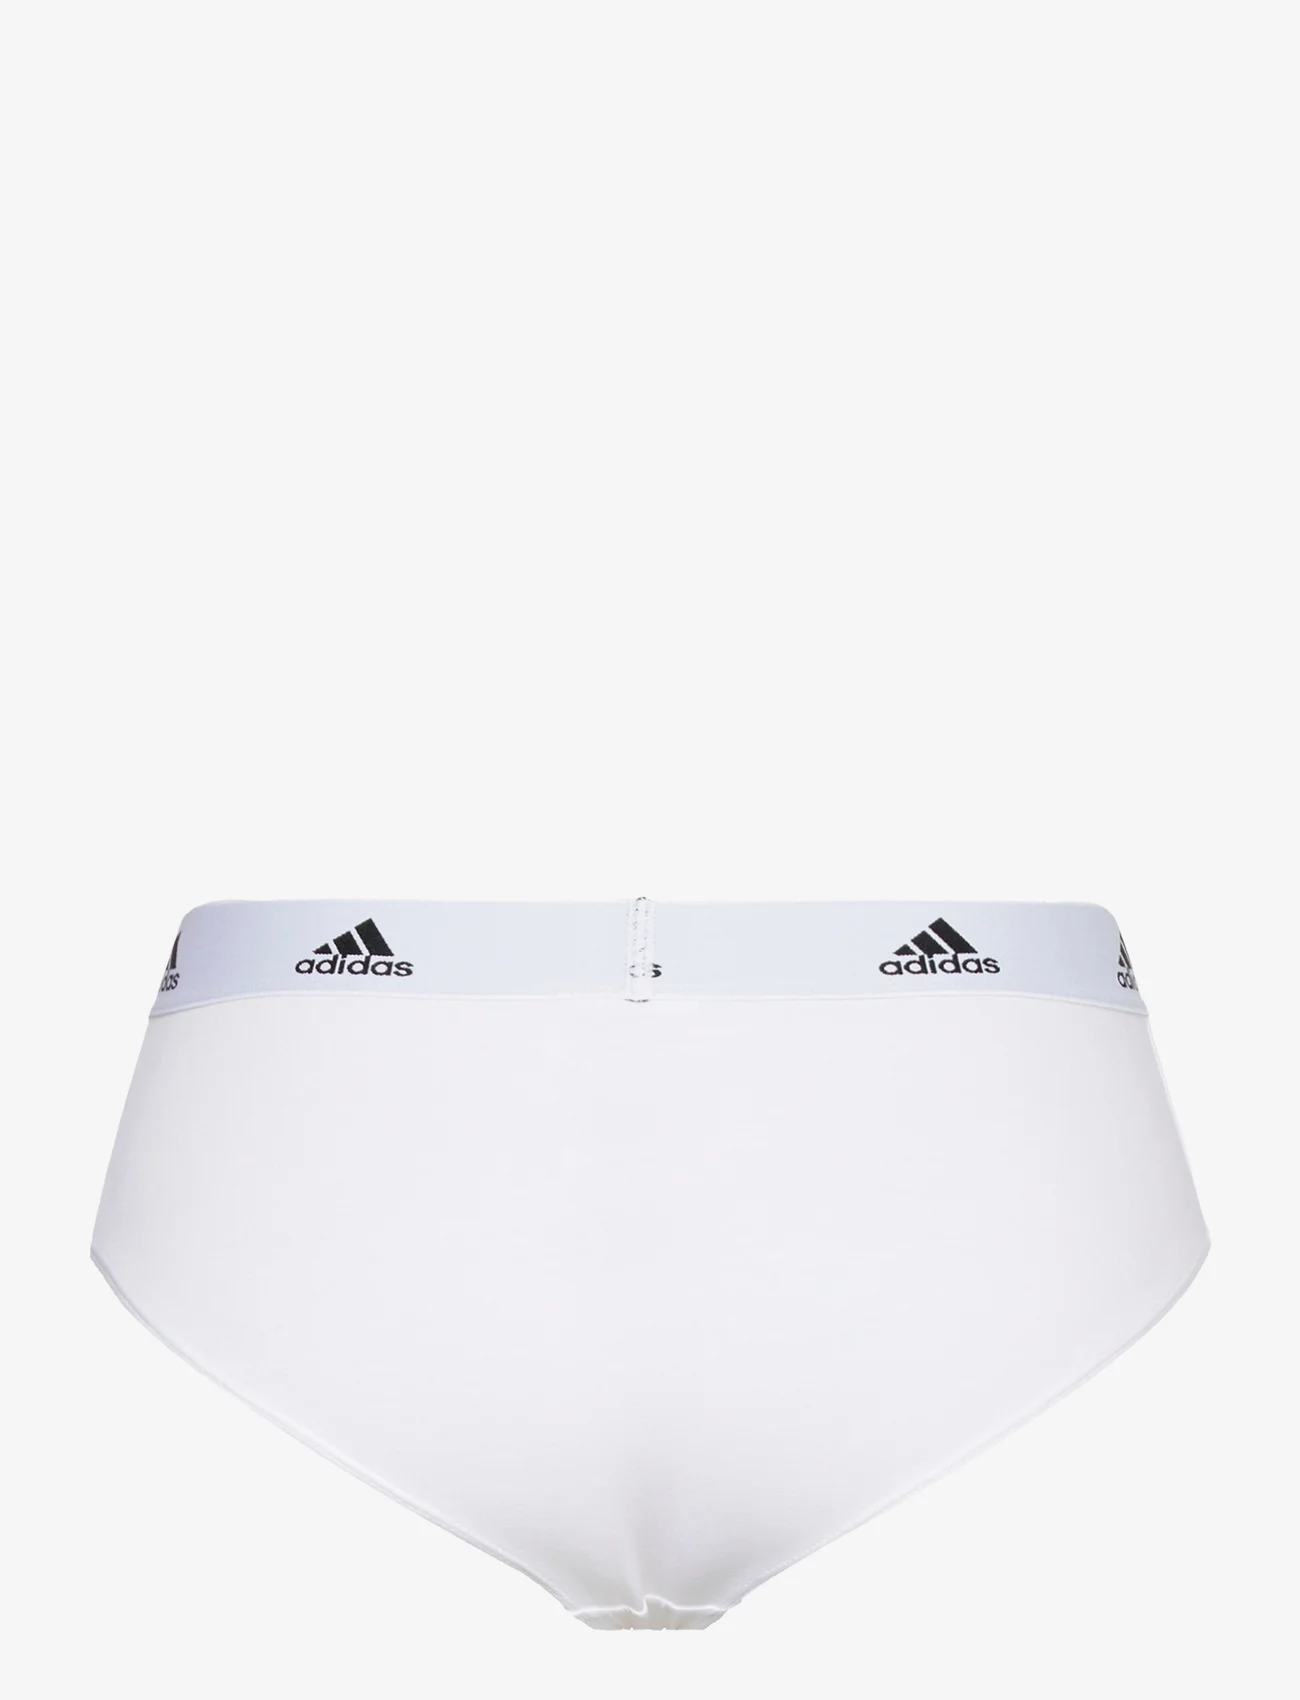 adidas Underwear - Brief - laveste priser - white - 1